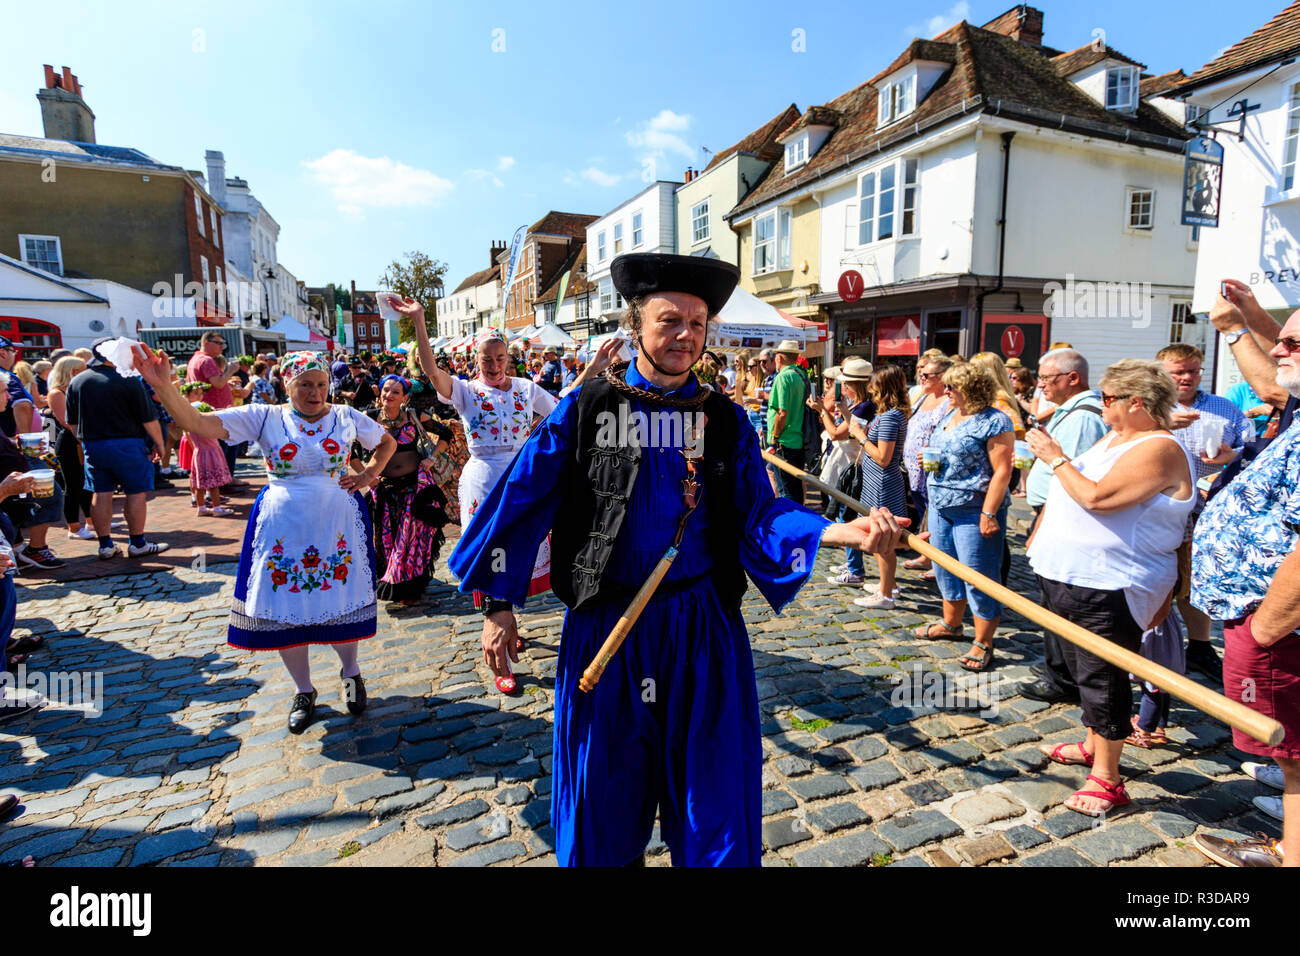 Faversham hop festival, Parade. Balaton danseurs hongrois, le plomb par l'homme en robe bleue, marche dans la rue bondée de spectateurs à regarder. Banque D'Images